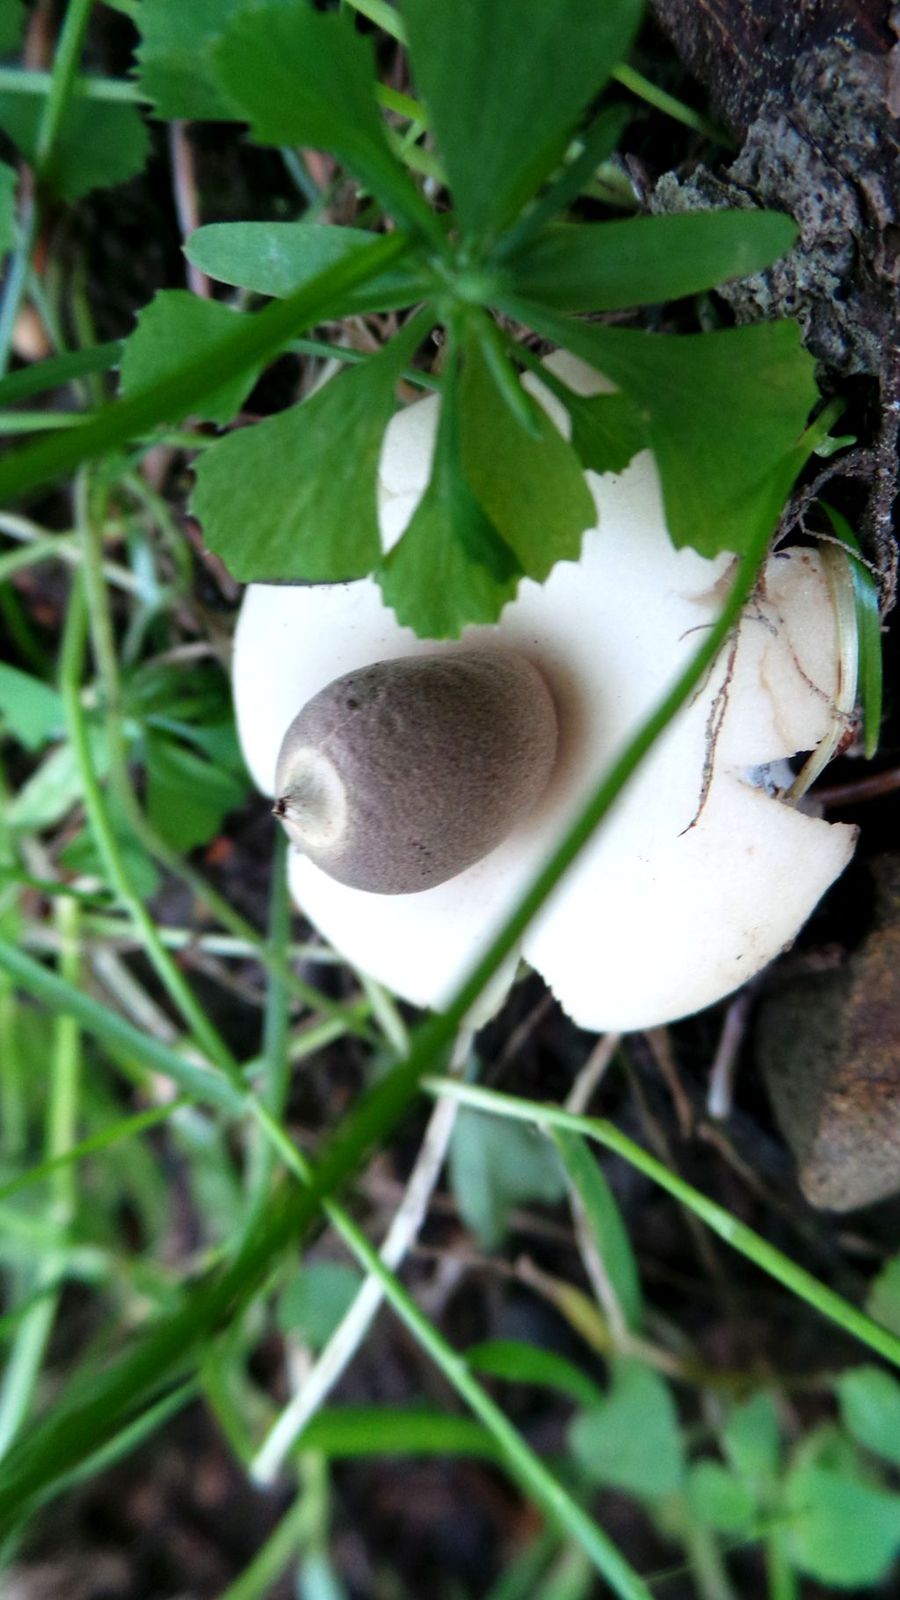 乌鲁木齐南山野蘑菇图片